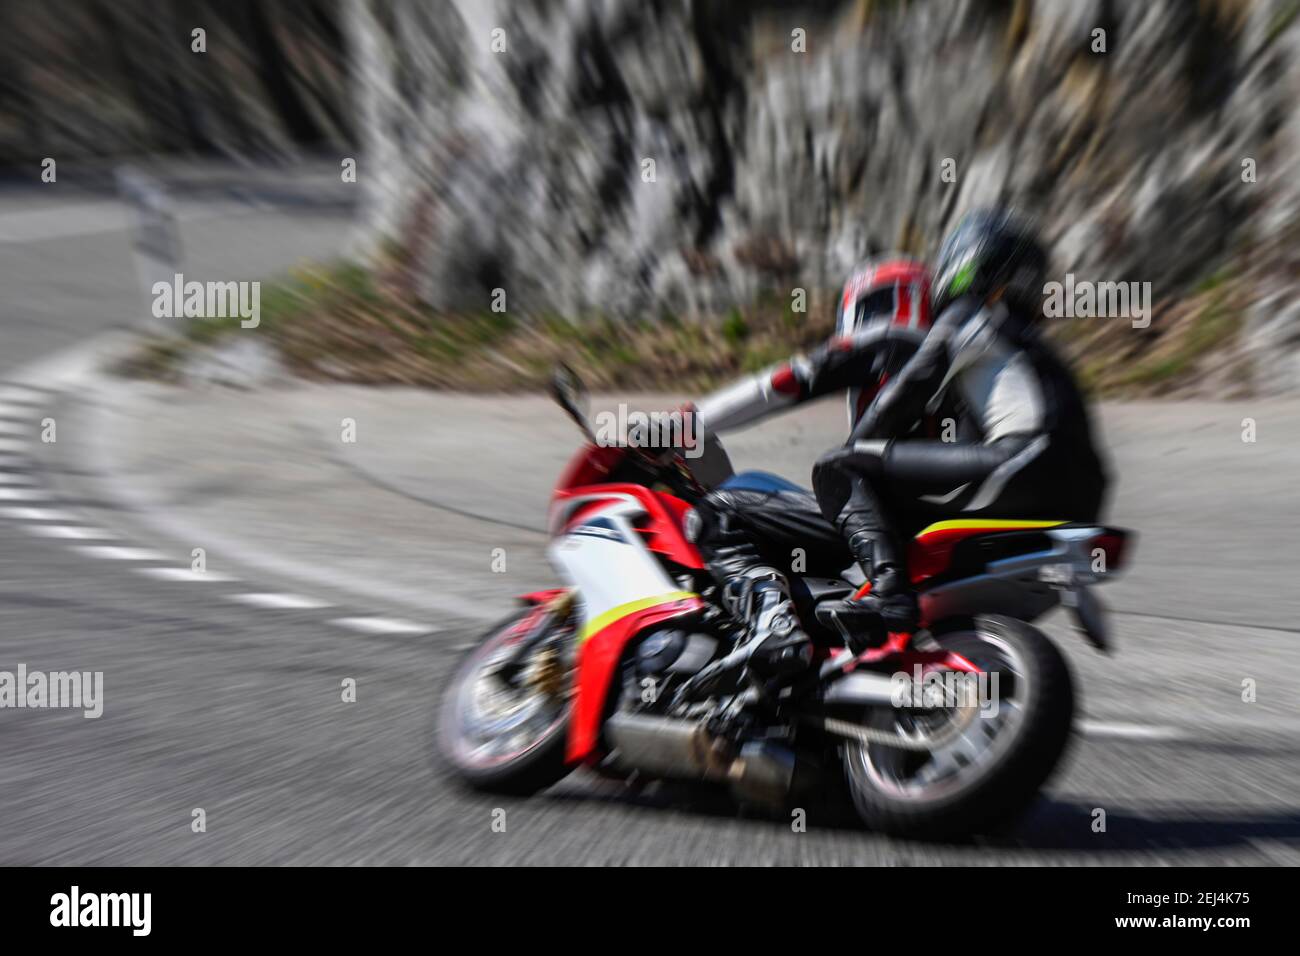 Wiping picture pass motorcyclist, Bruenig, Meiringen, Switzerland Stock Photo